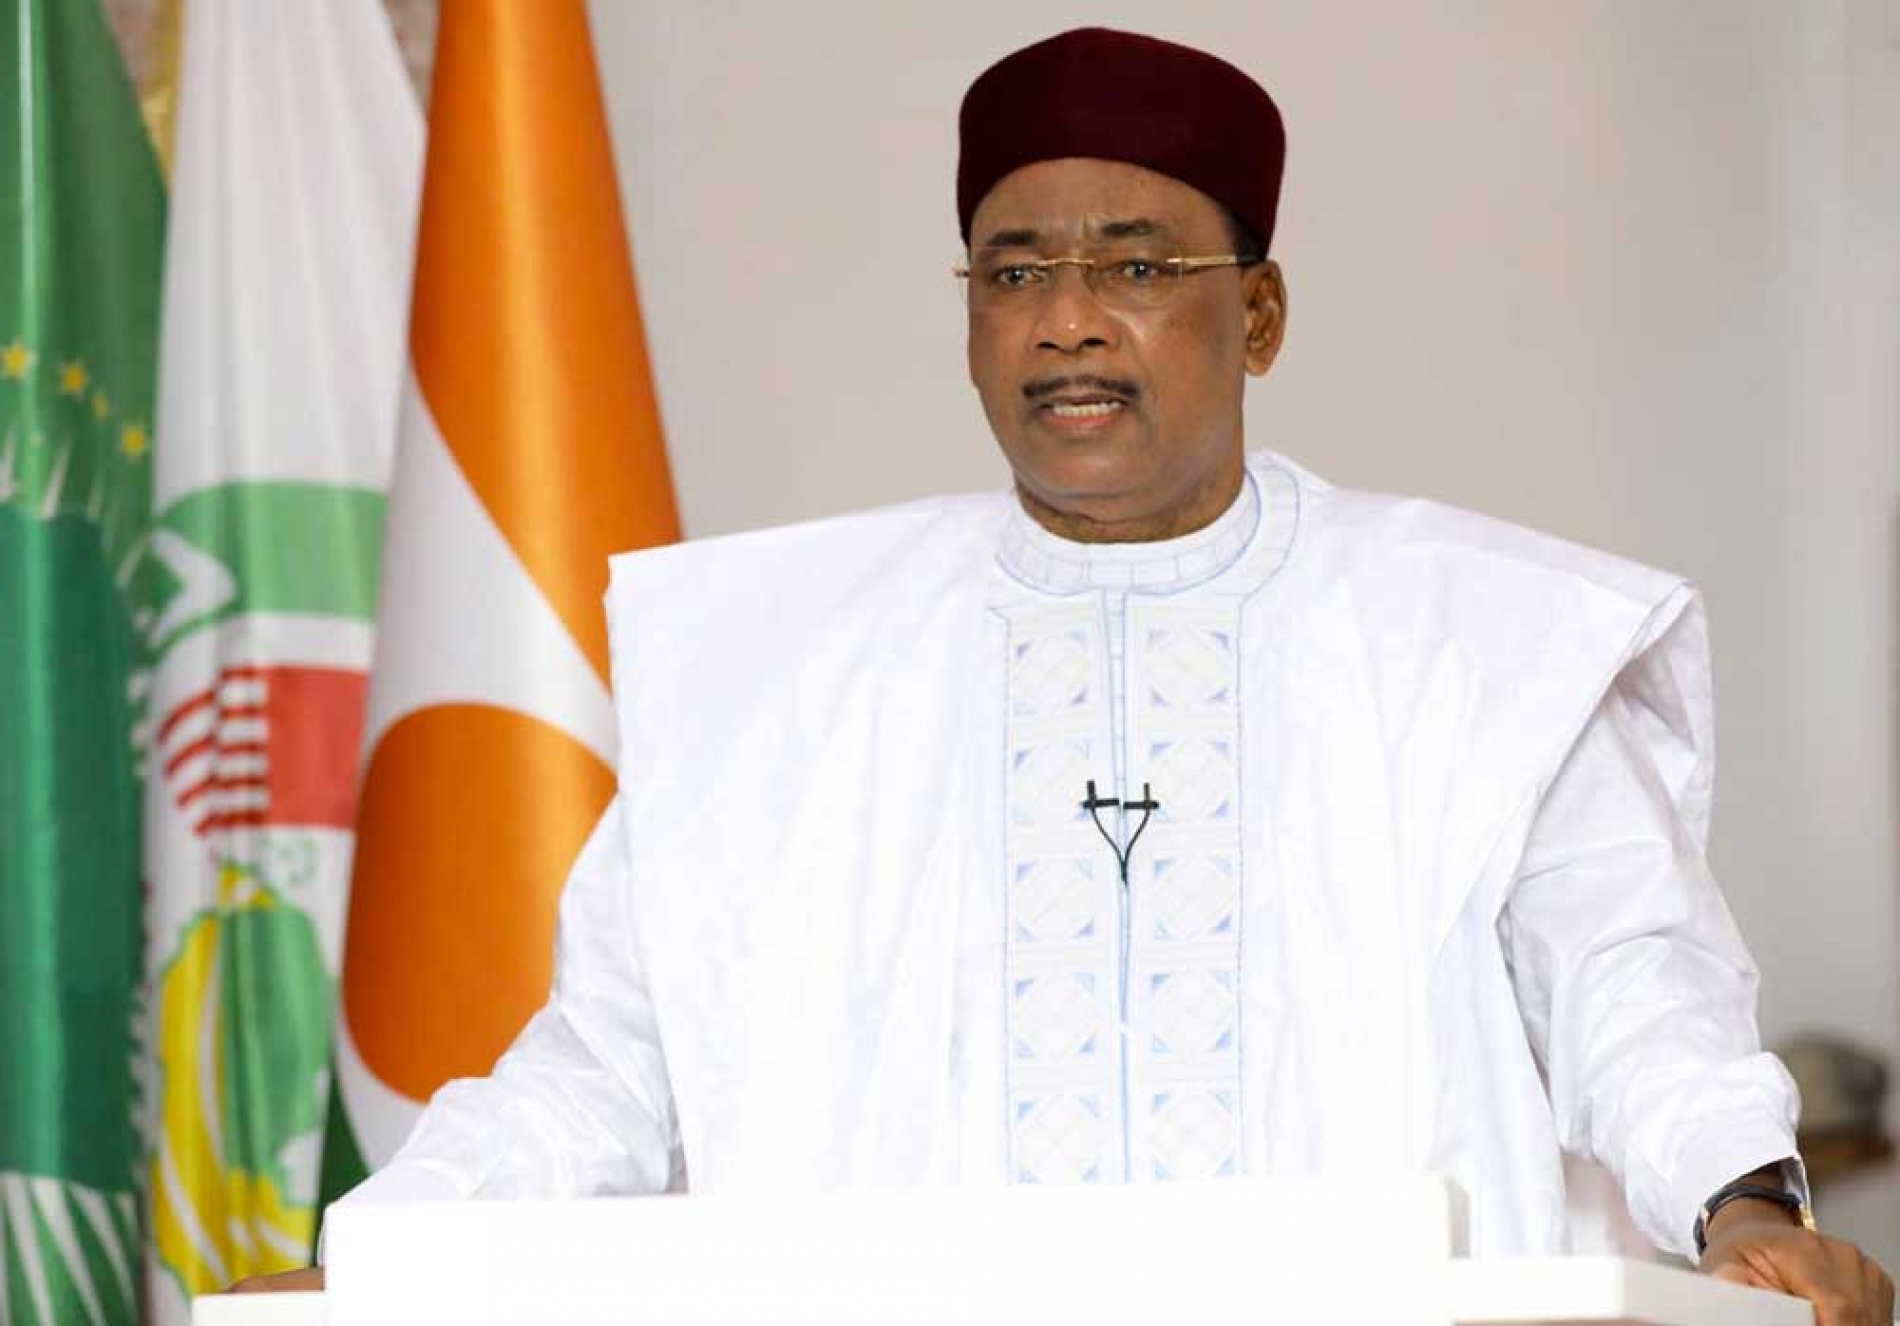 Allocution du Président de la République du Niger, Champion de la Zone de Libre Échange Continentale Africaine (ZLECAf), à l’occasion de la remise du Siège : «J’exhorte tous à garder le sens de l’unité, de la solidarité et de la dignité comme valeurs